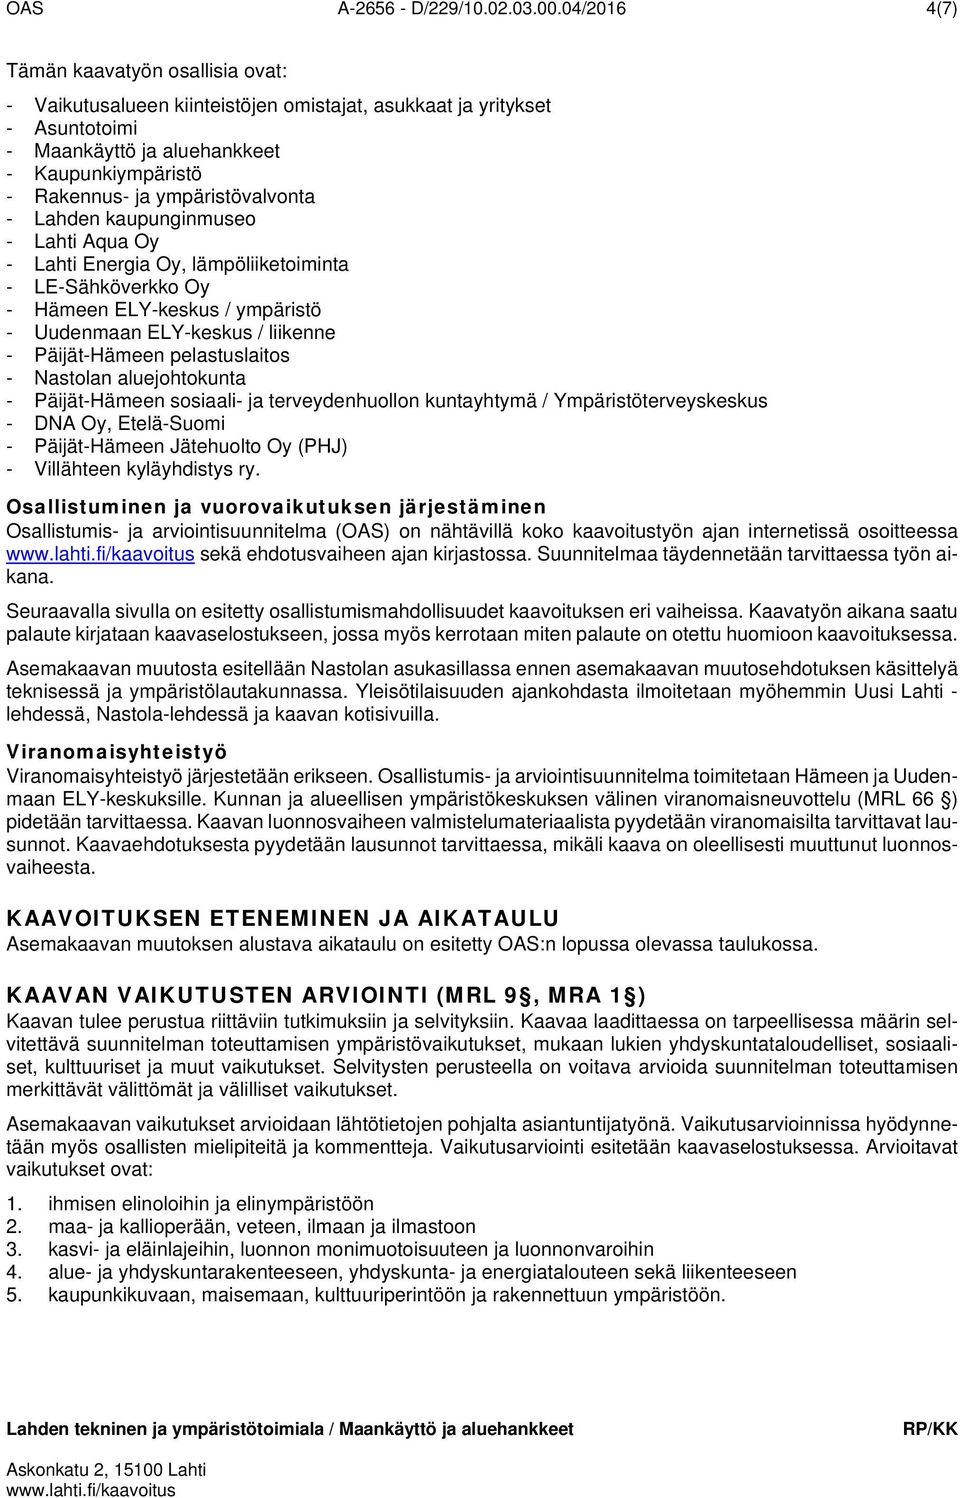 ympäristövalvonta - Lahden kaupunginmuseo - Lahti Aqua Oy - Lahti Energia Oy, lämpöliiketoiminta - LE-Sähköverkko Oy - Hämeen ELY-keskus / ympäristö - Uudenmaan ELY-keskus / liikenne - Päijät-Hämeen